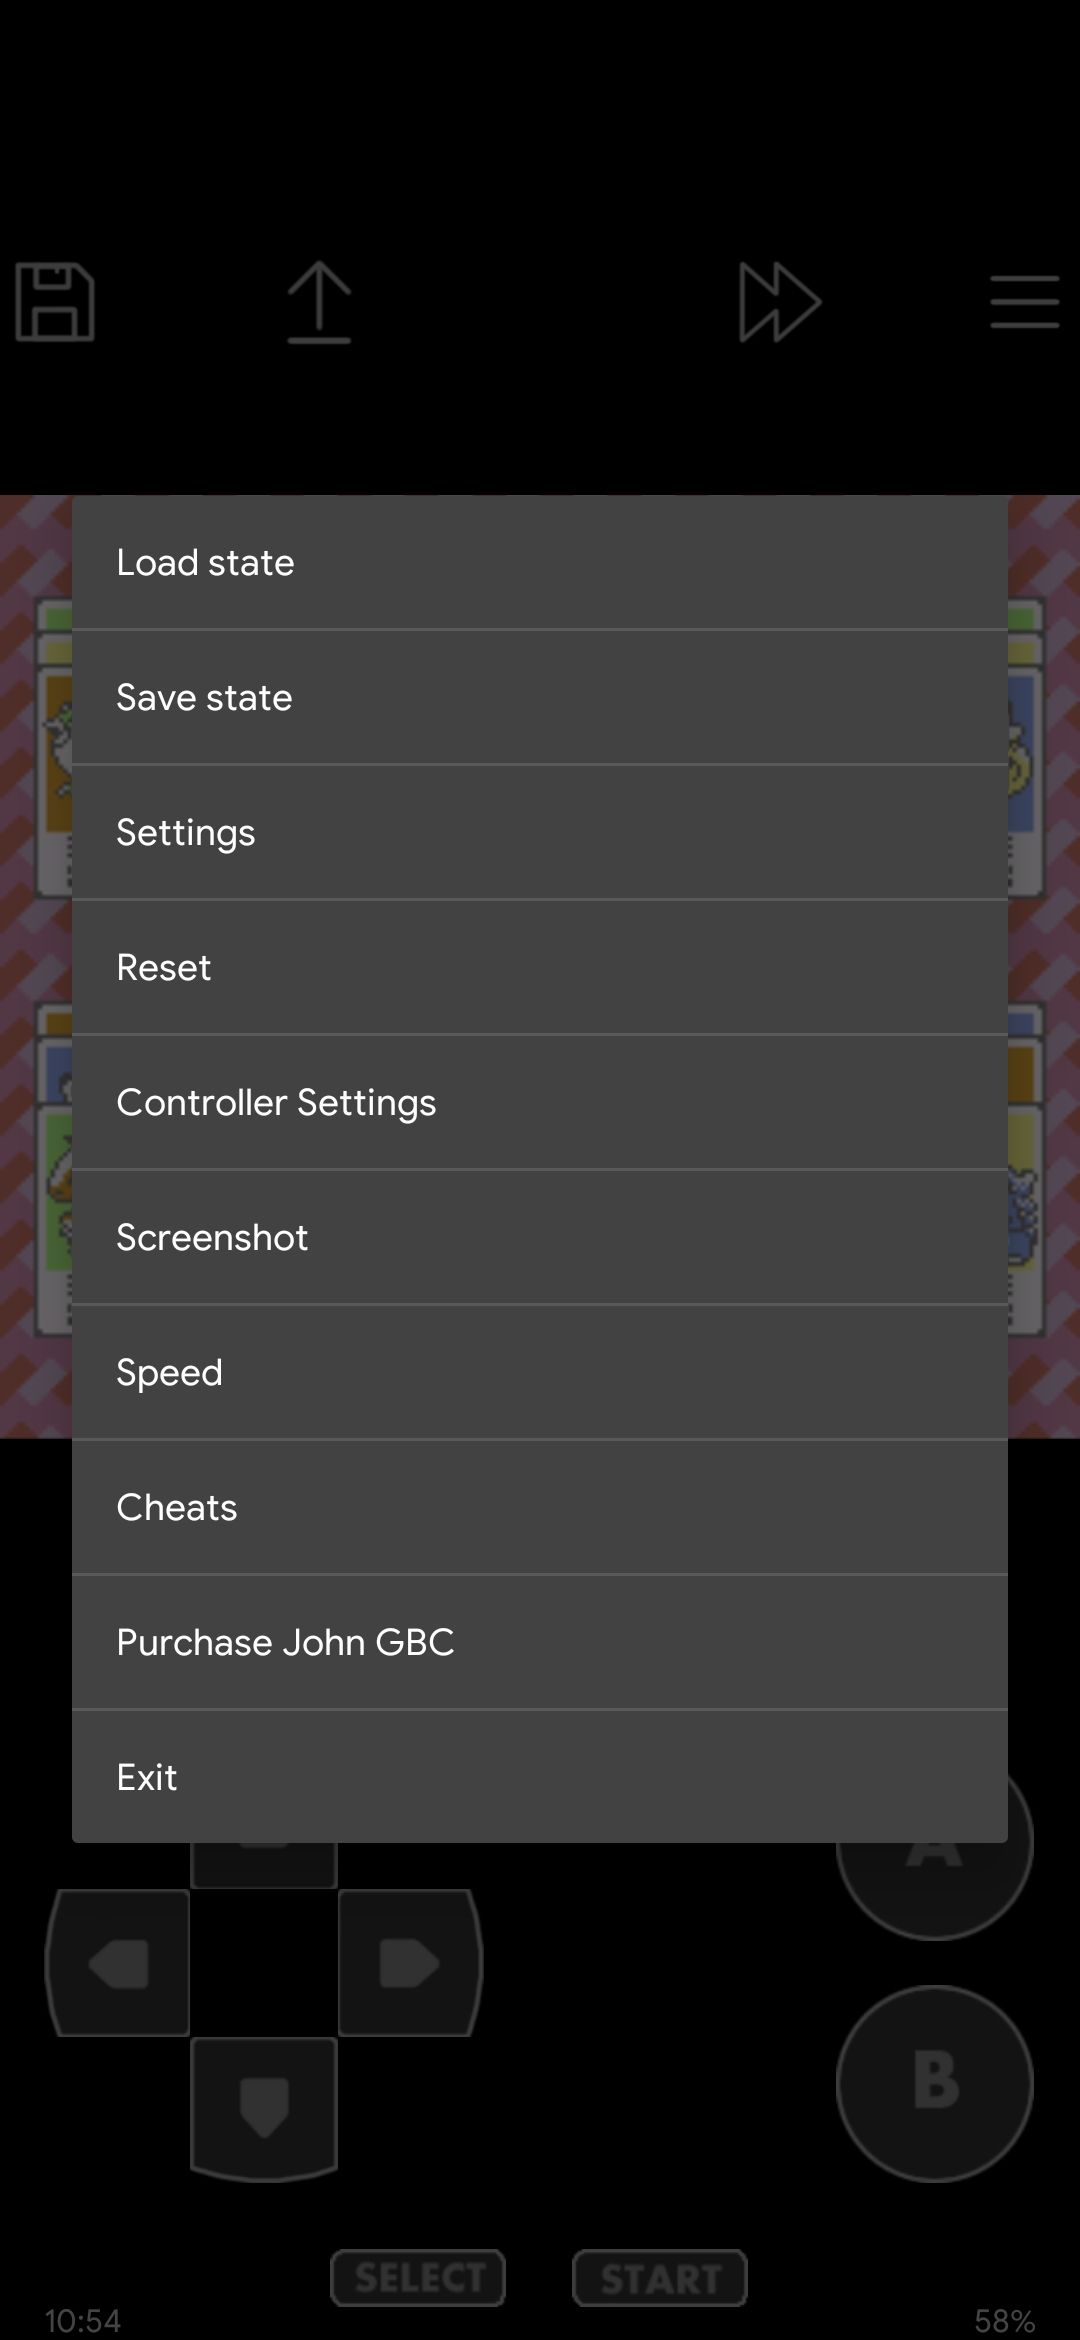 John GBAC settings menu